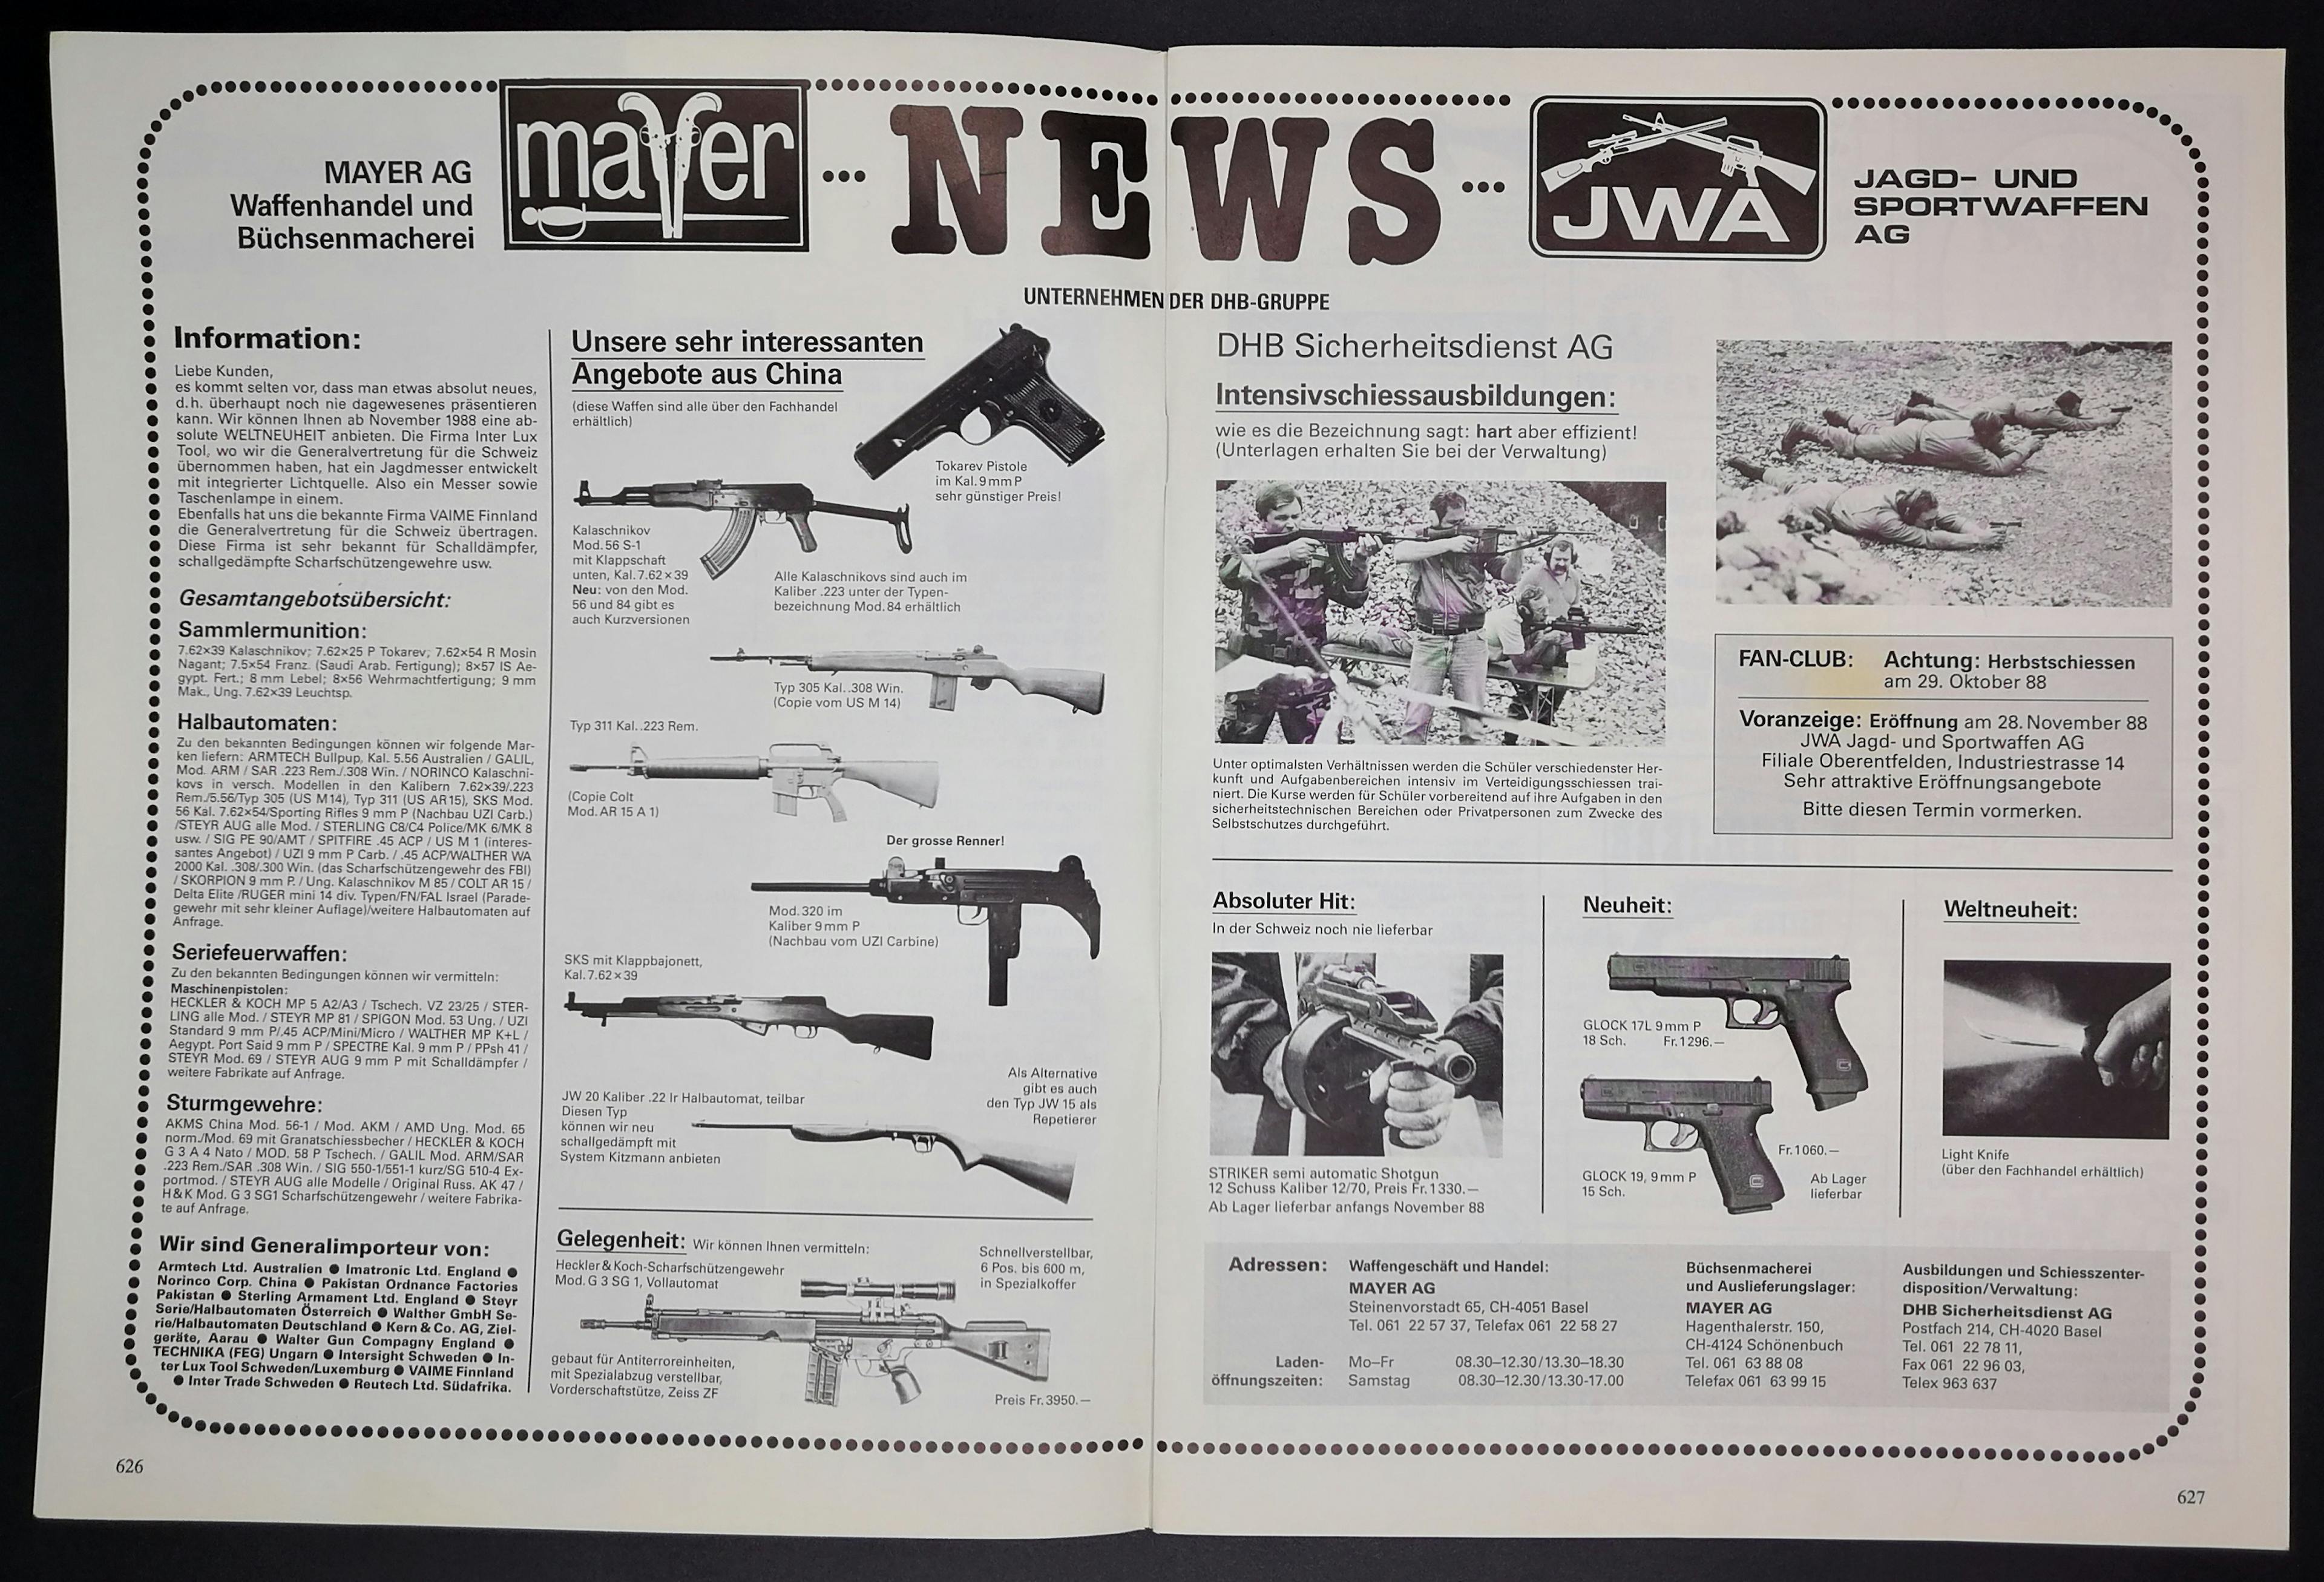 Was gibts neues bei Mayer? Ein Heckler & Koch G3 SG1, ein... vollautomatisches Scharfschützengewehr. Okay.
